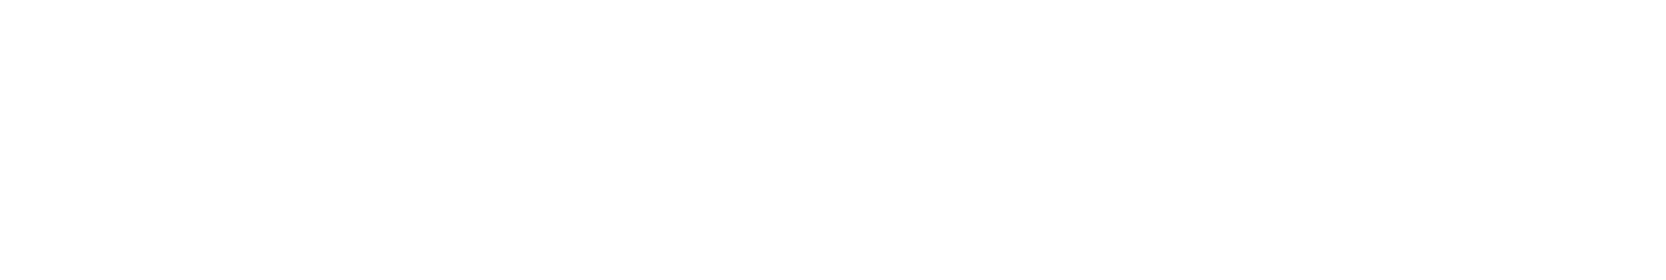 Regions Financial
 Logo groß für dunkle Hintergründe (transparentes PNG)